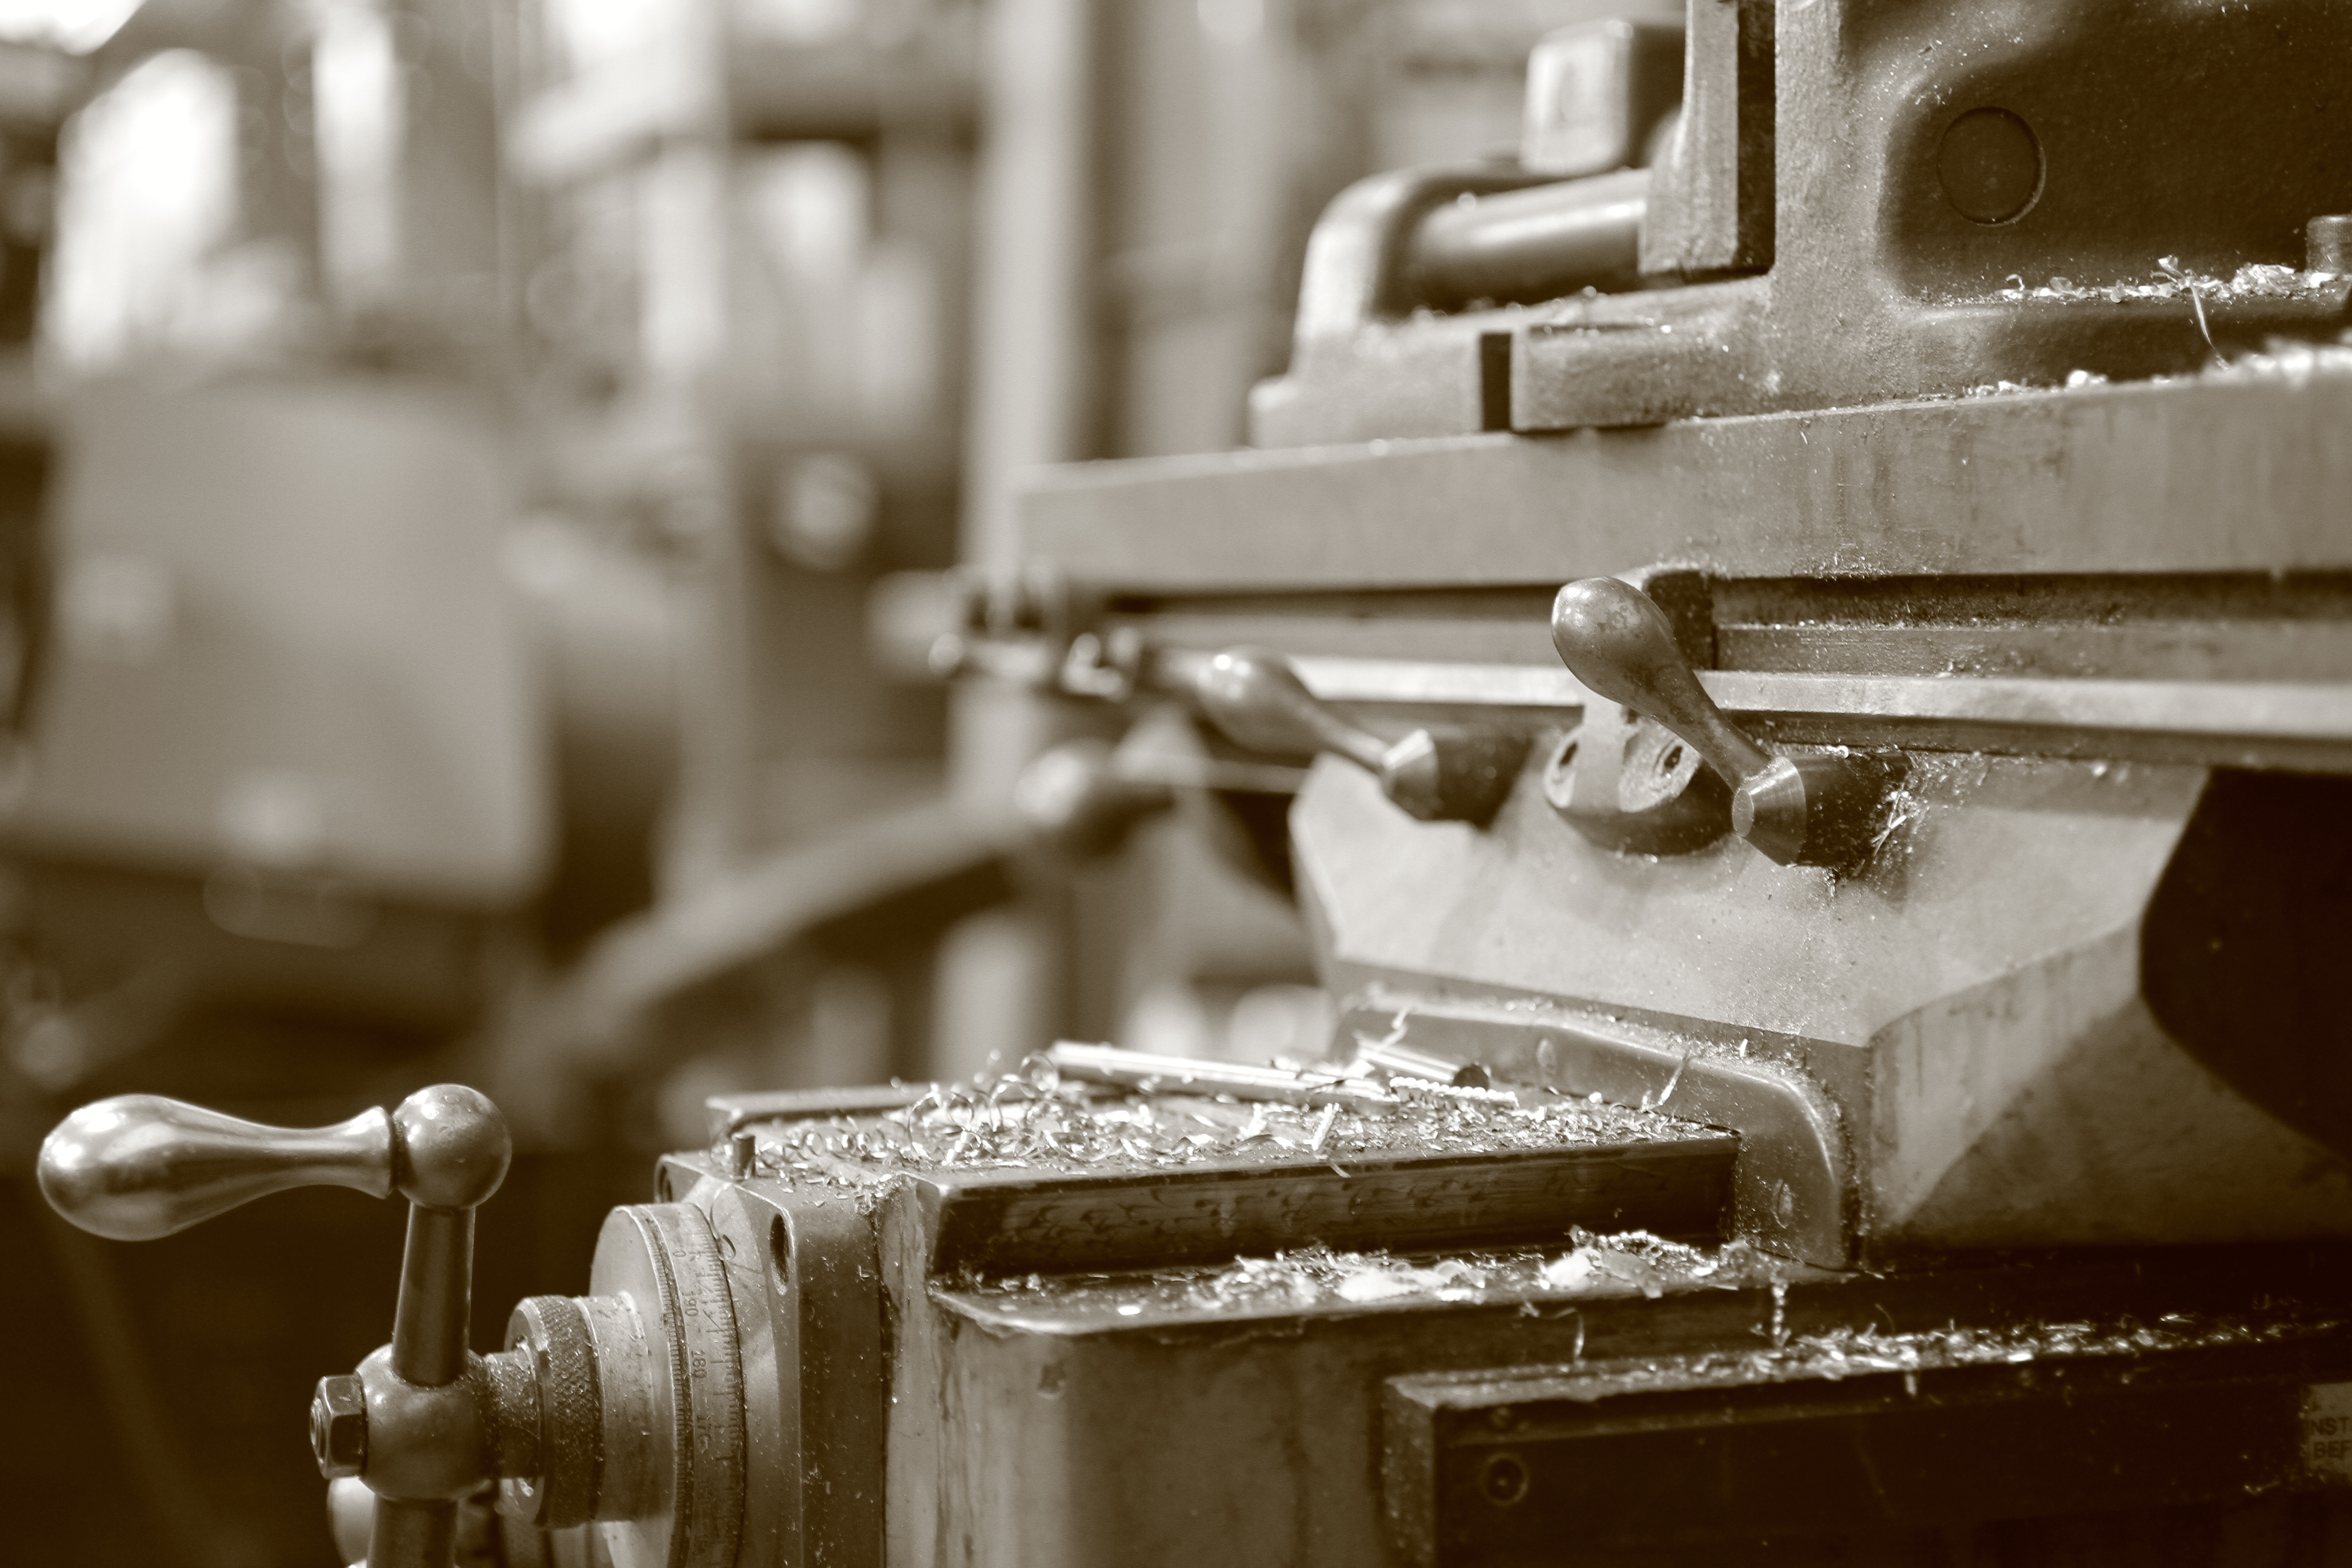 milling machine repair and rebuilding